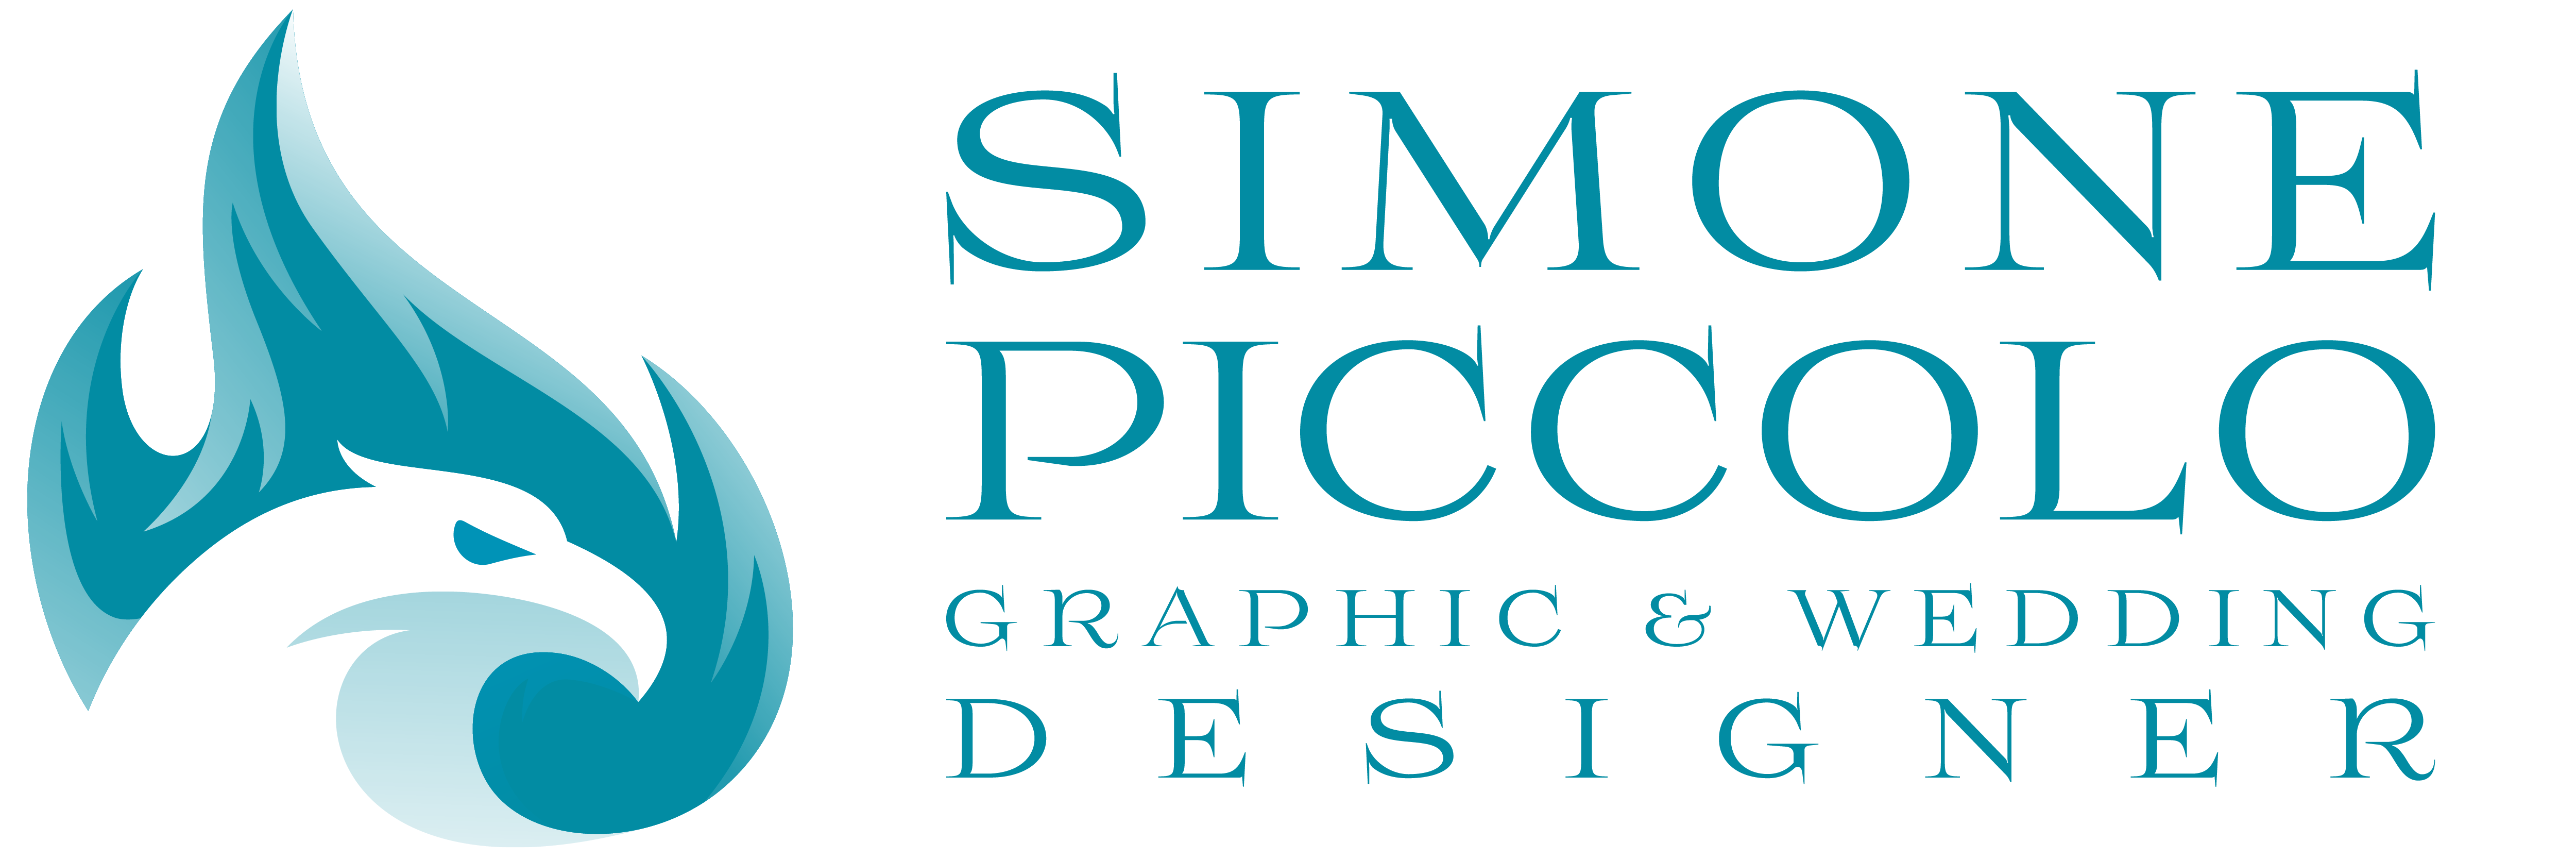 Simone Piccolo - Graphic & Wedding Designer